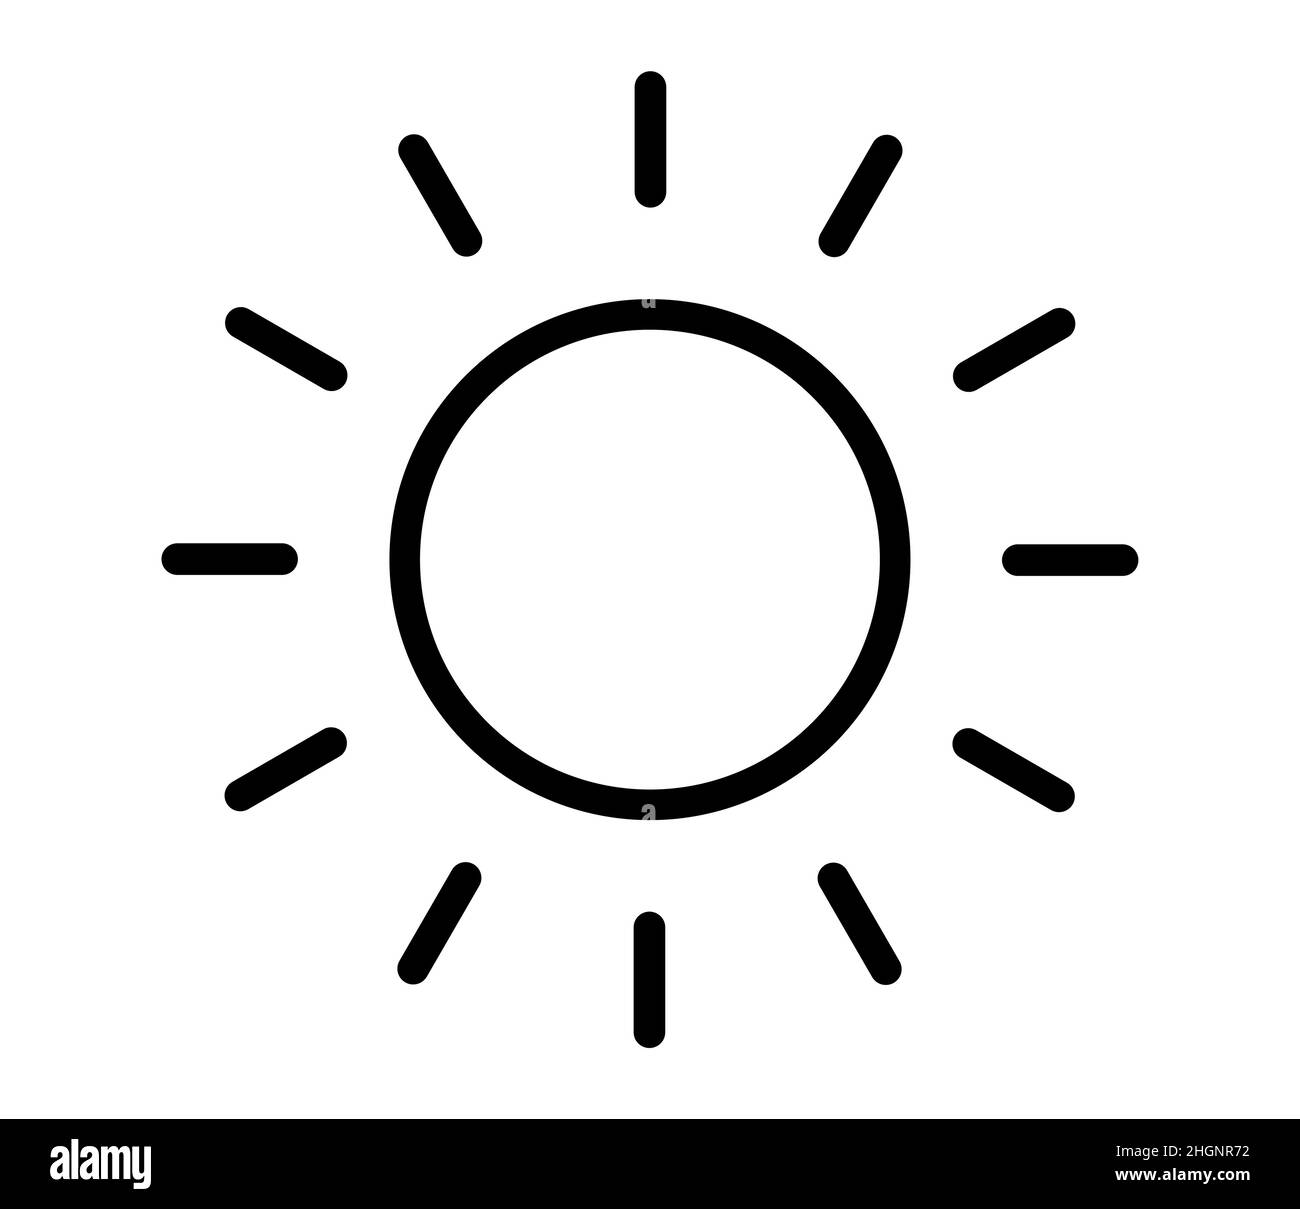 Sonnensymbol für Helligkeit und Intensität. Vektorgrafik Stock Vektor